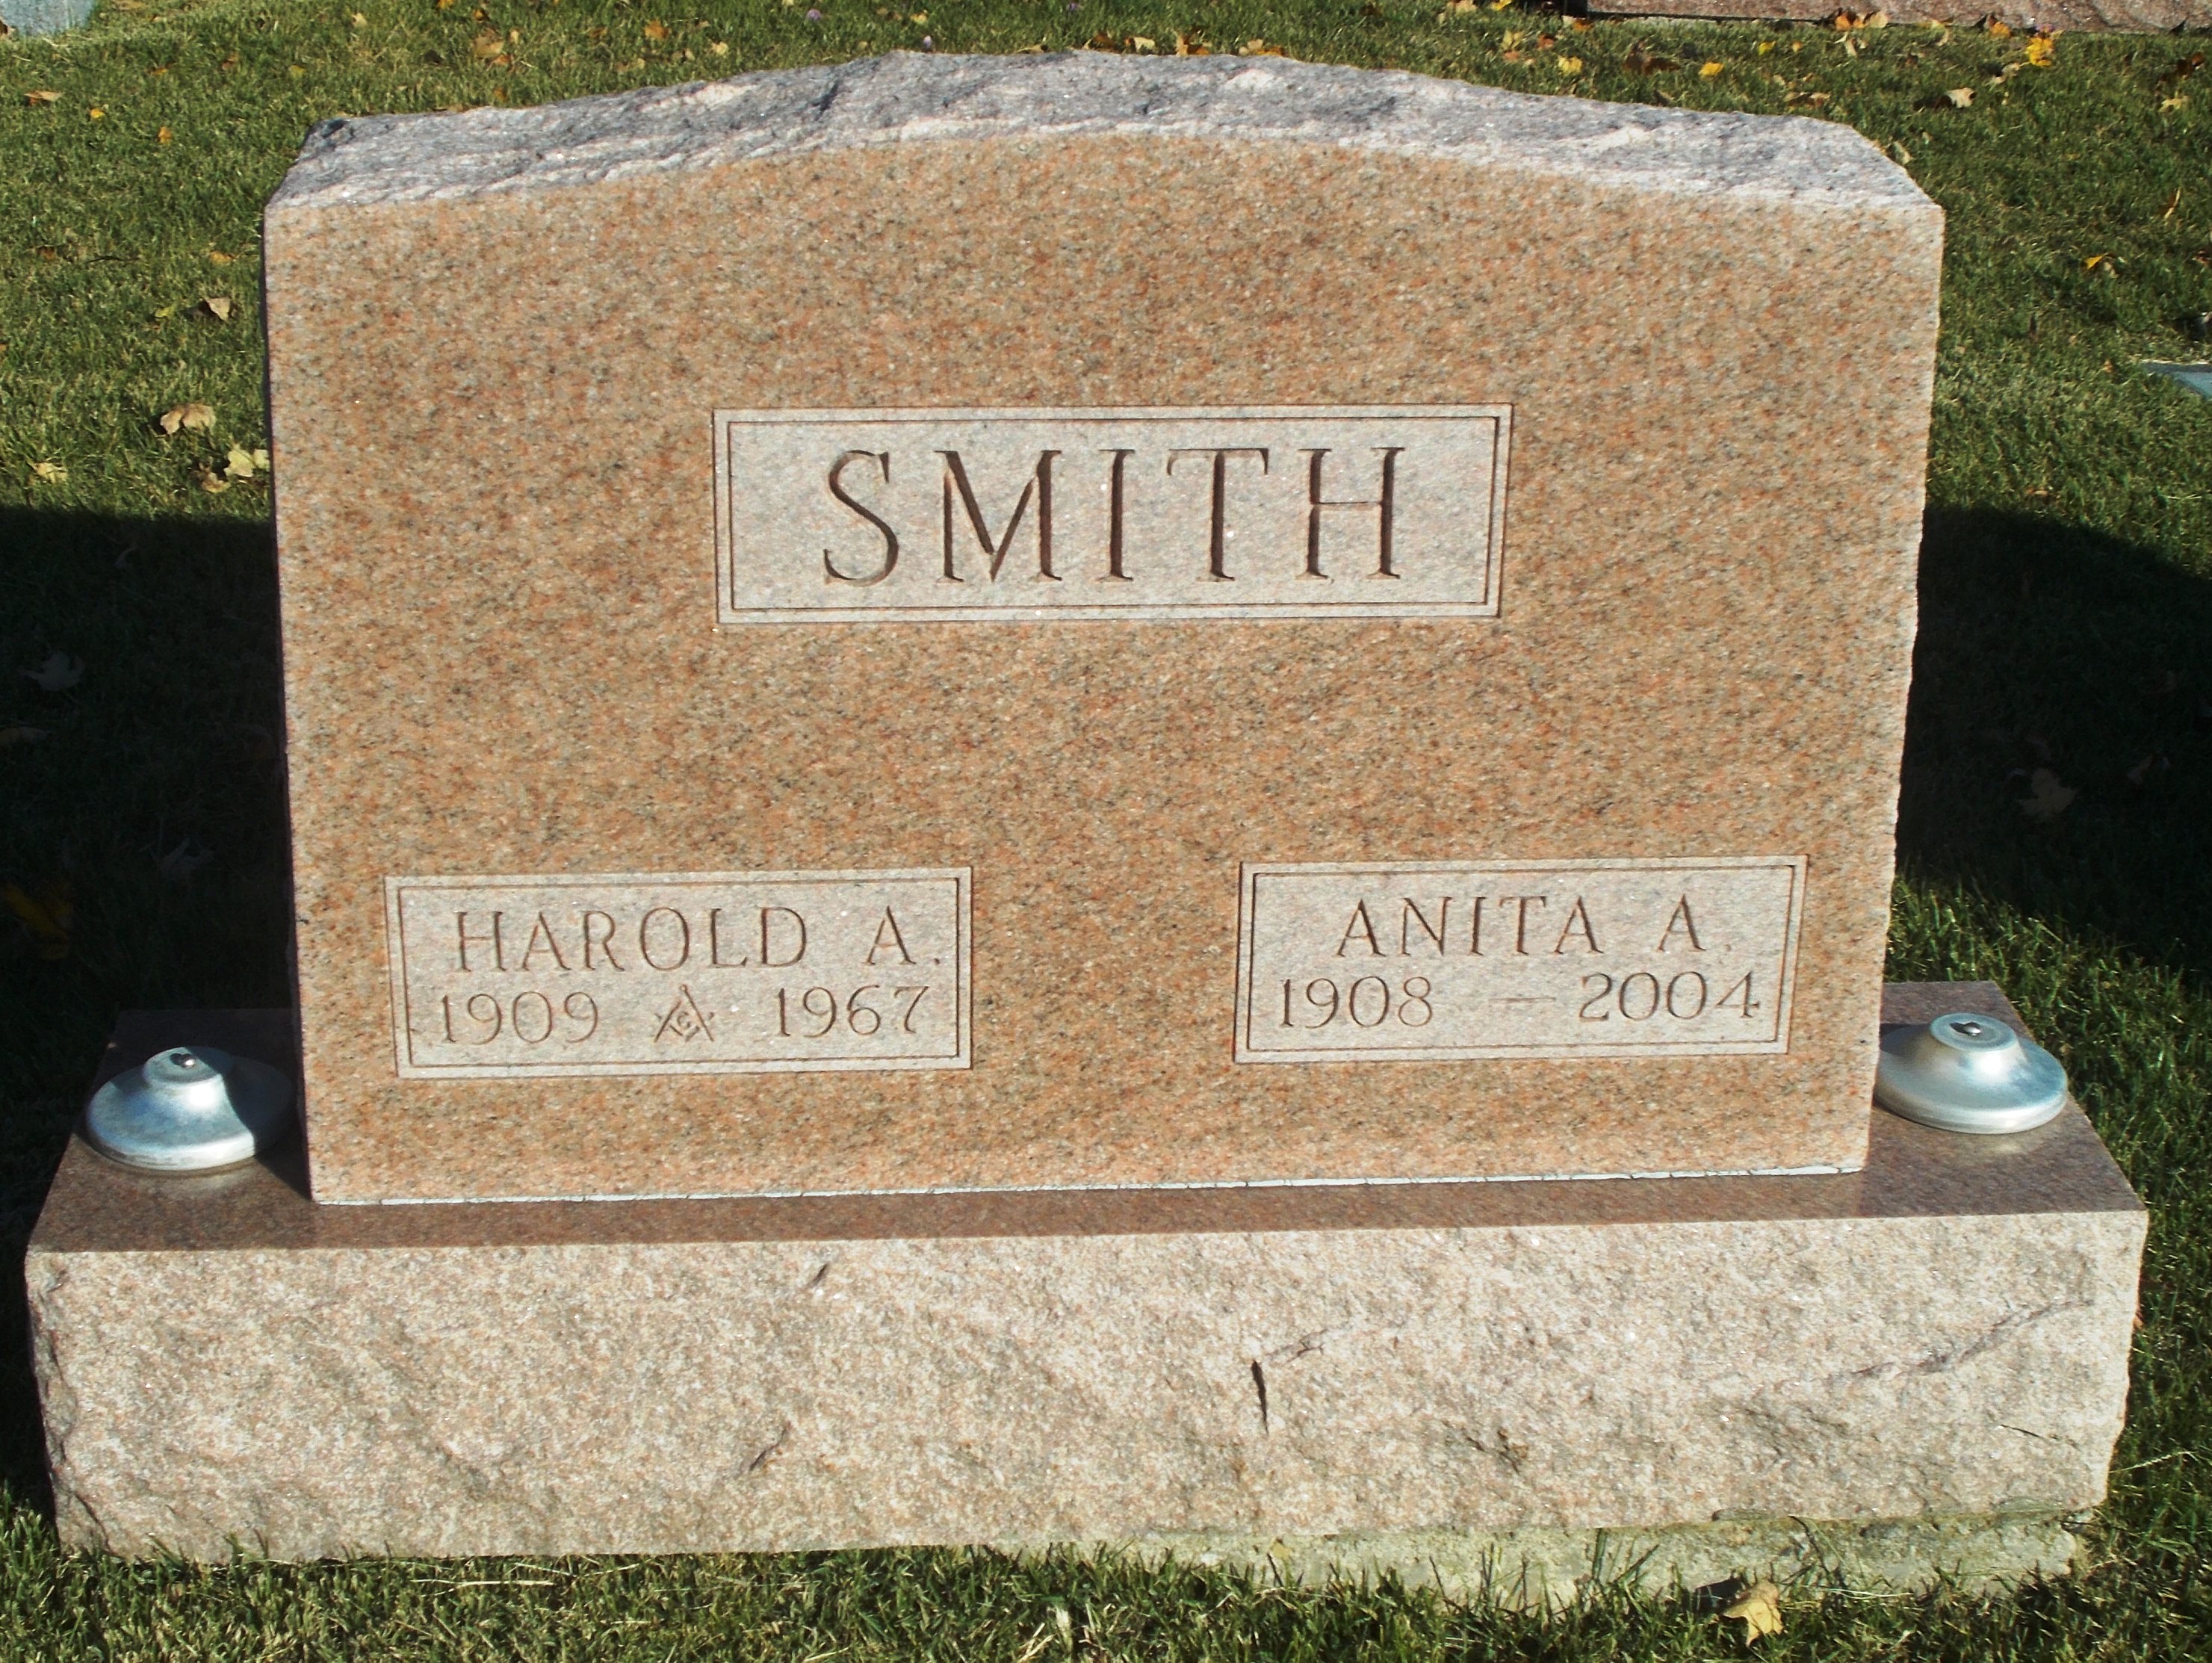 Anita A Smith